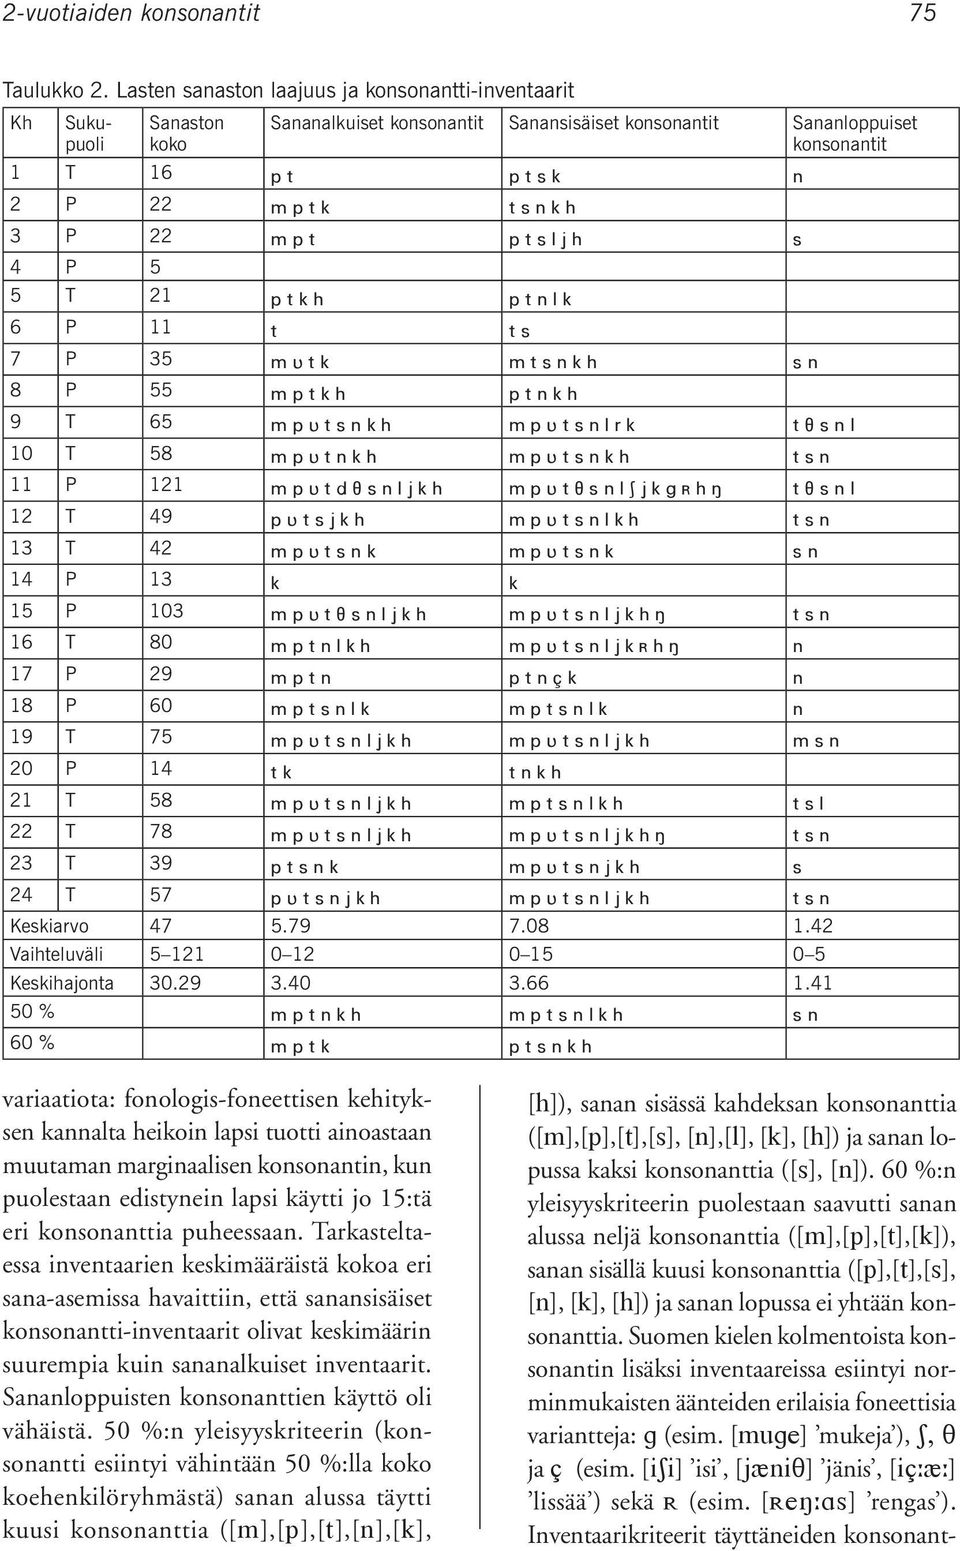 Suomen kielen kolmentoista konsonantin lisäksi inventaareissa esiintyi norminmukaisten äänteiden erilaisia foneettisia variantteja: (esim. [ ] mukeja ), ja (esim.